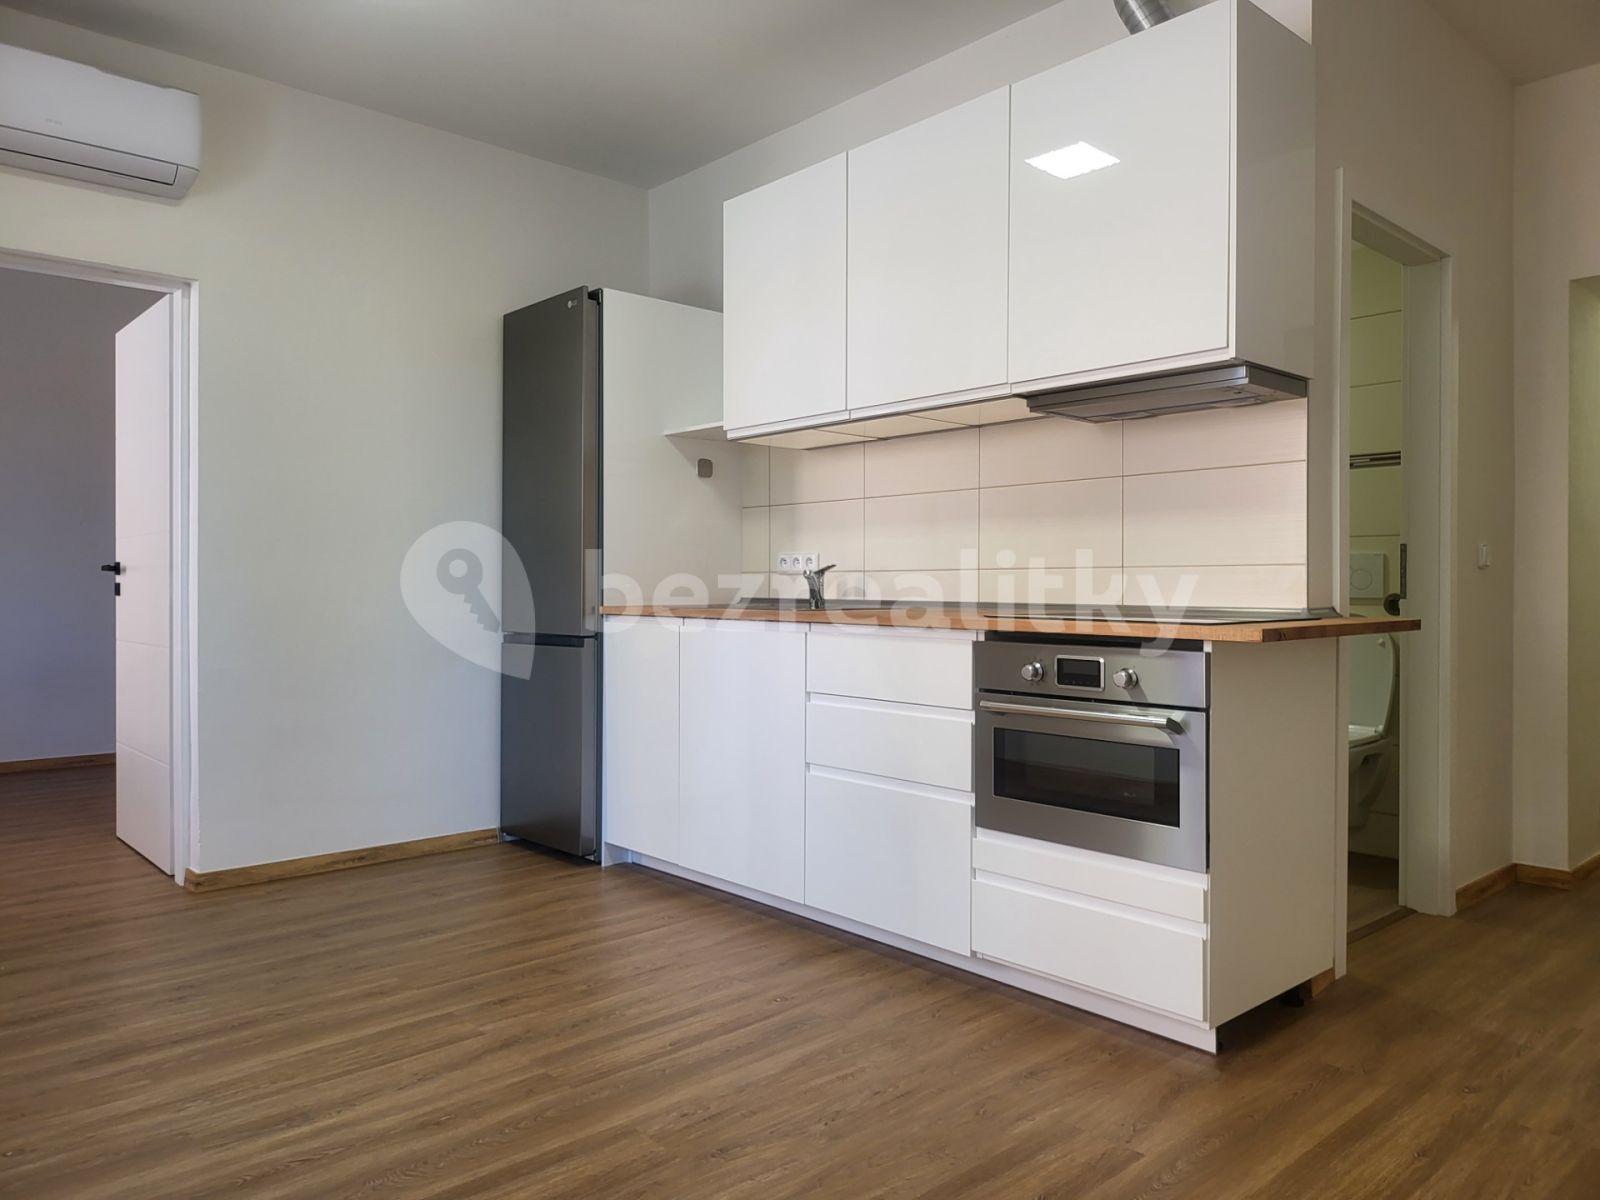 1 bedroom with open-plan kitchen flat for sale, 40 m², náměstí 3. května, Brno, Jihomoravský Region